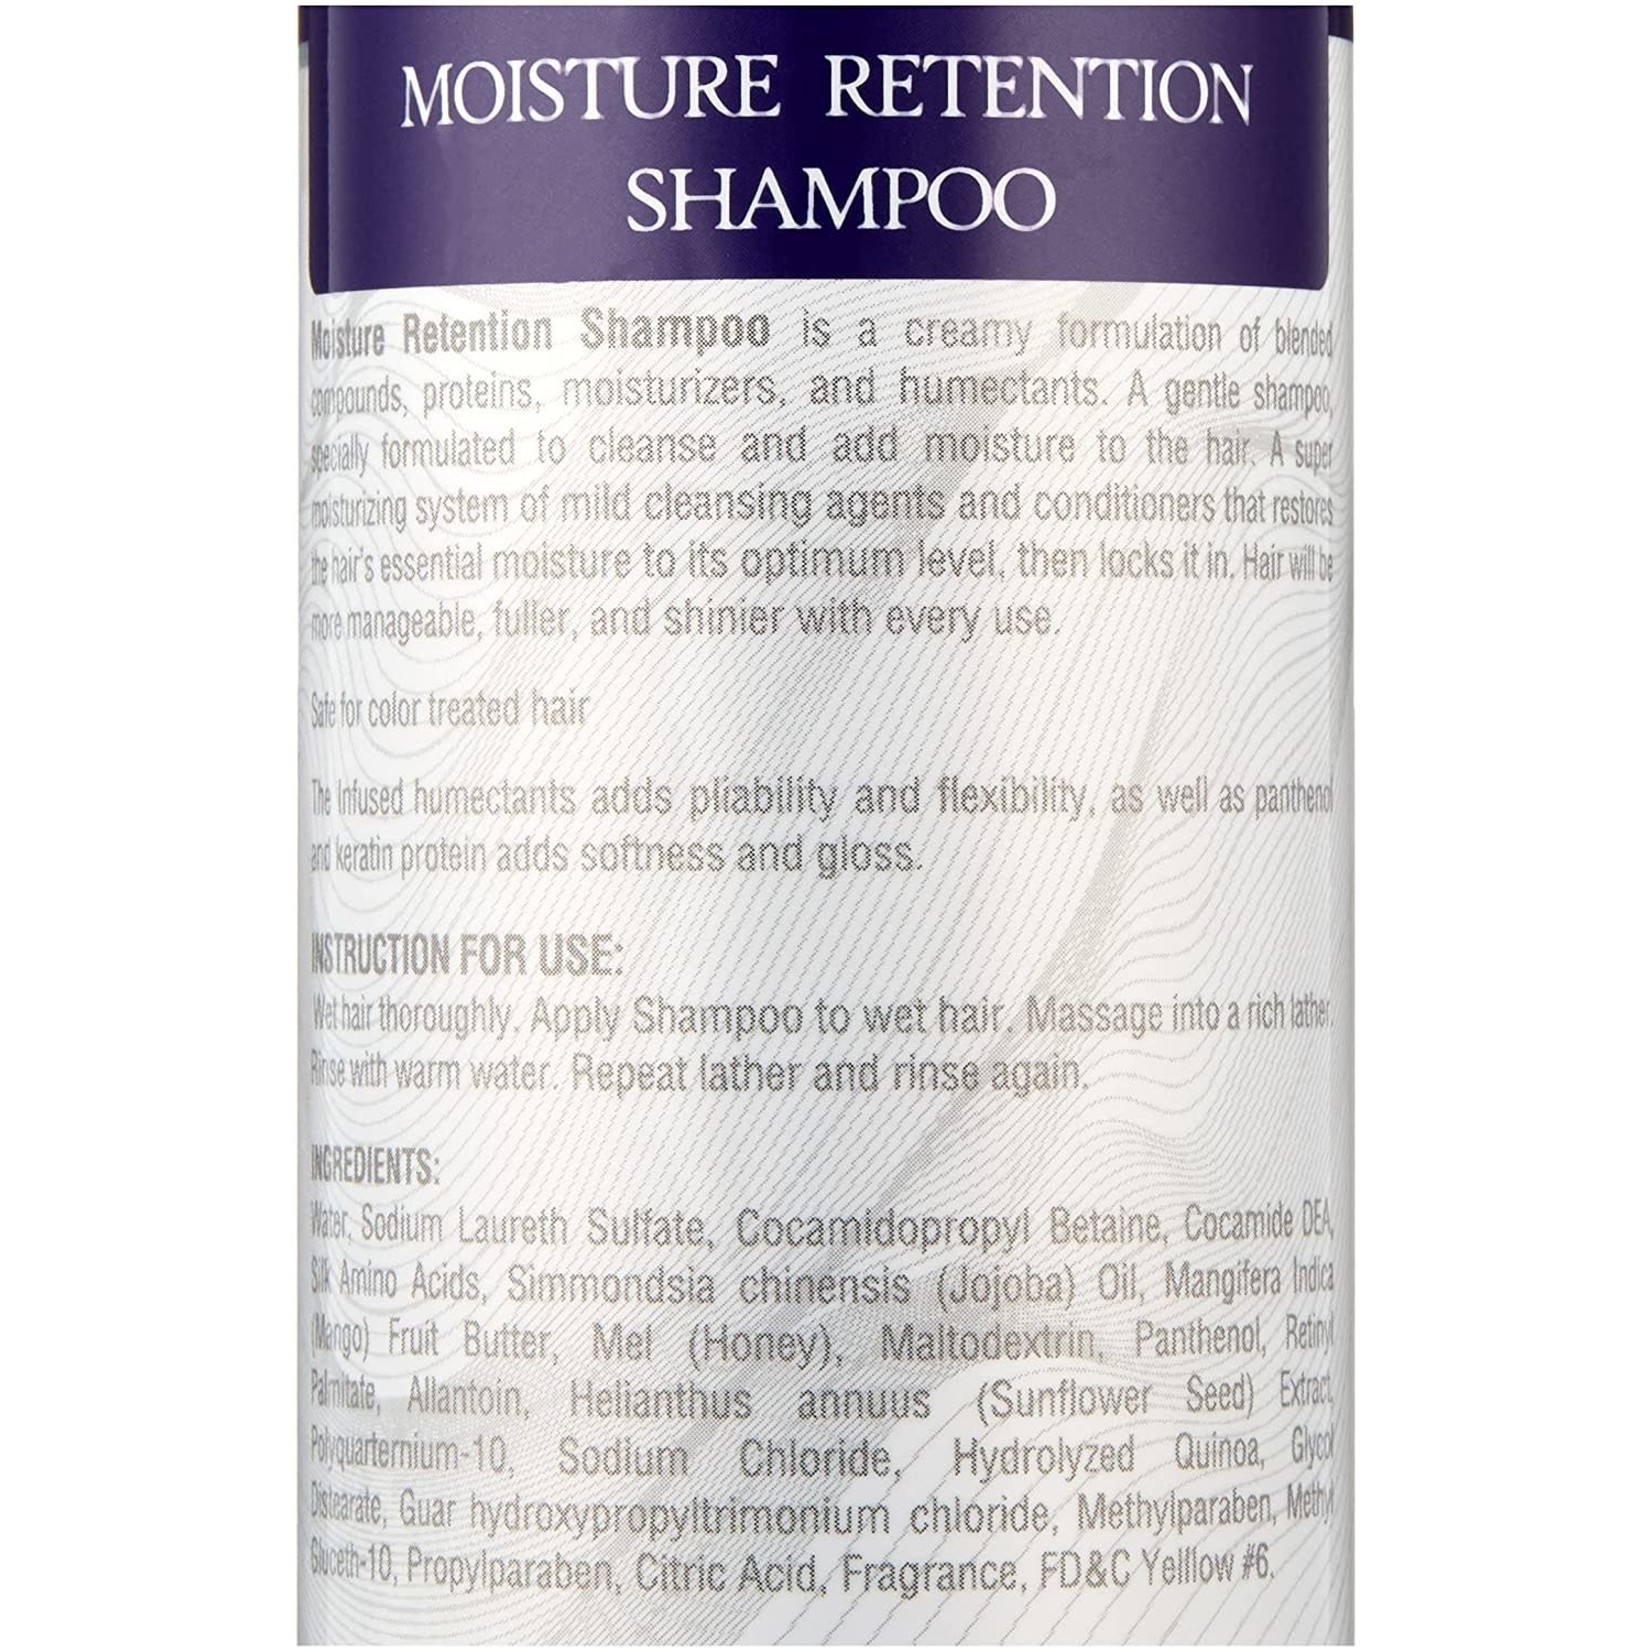 Moisture Retention Shampoo